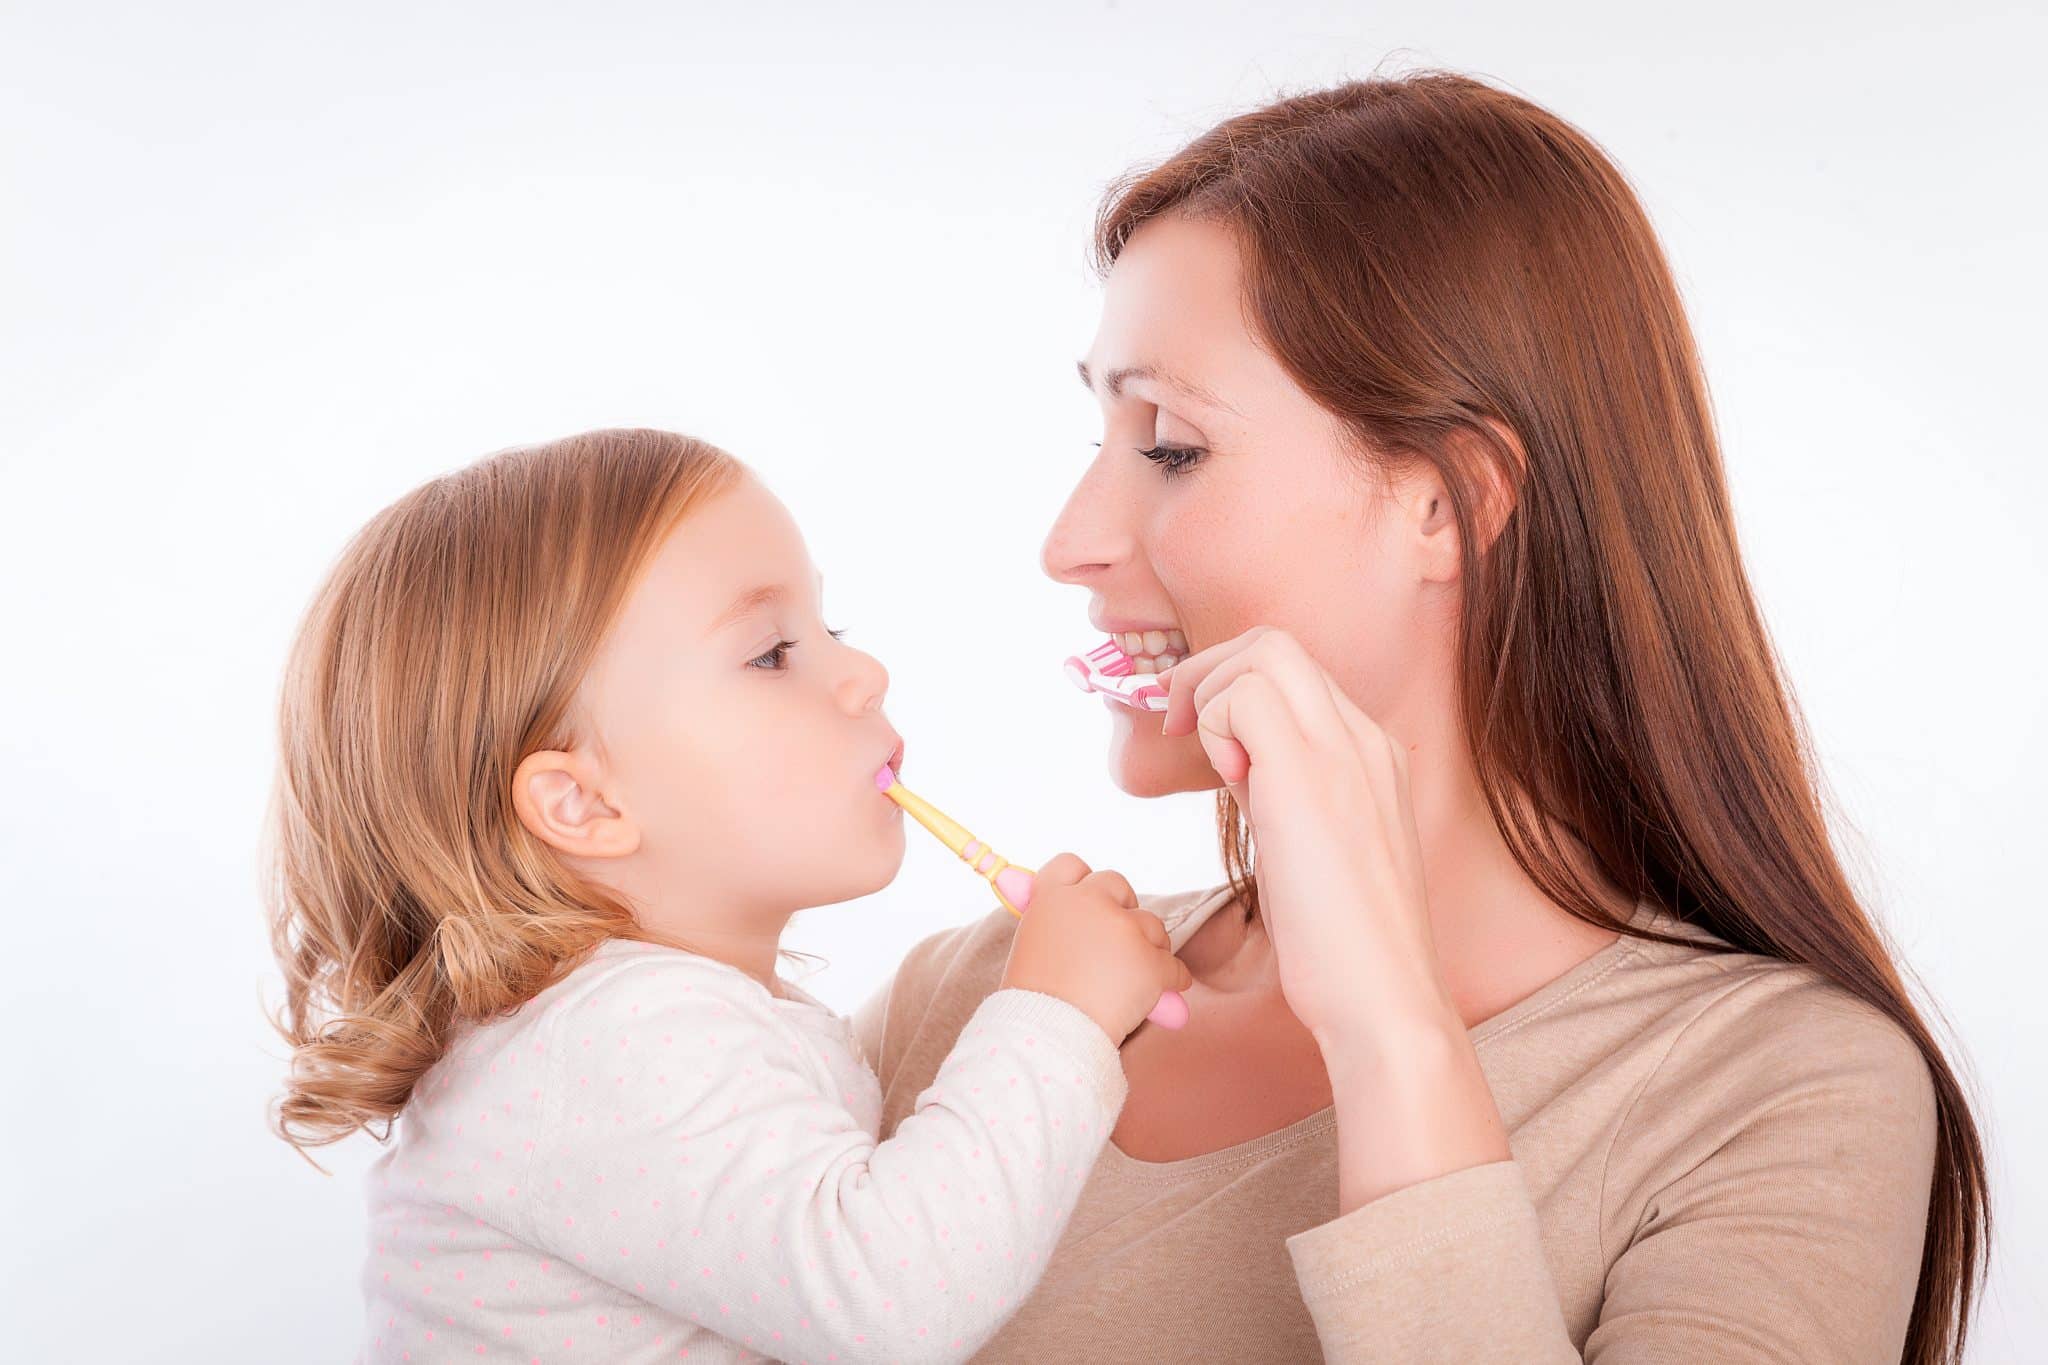 Frau mit Kleinkind auf dem Arm, beide halten eine Zahnbürste in der Hand und putzen sich die Zähne